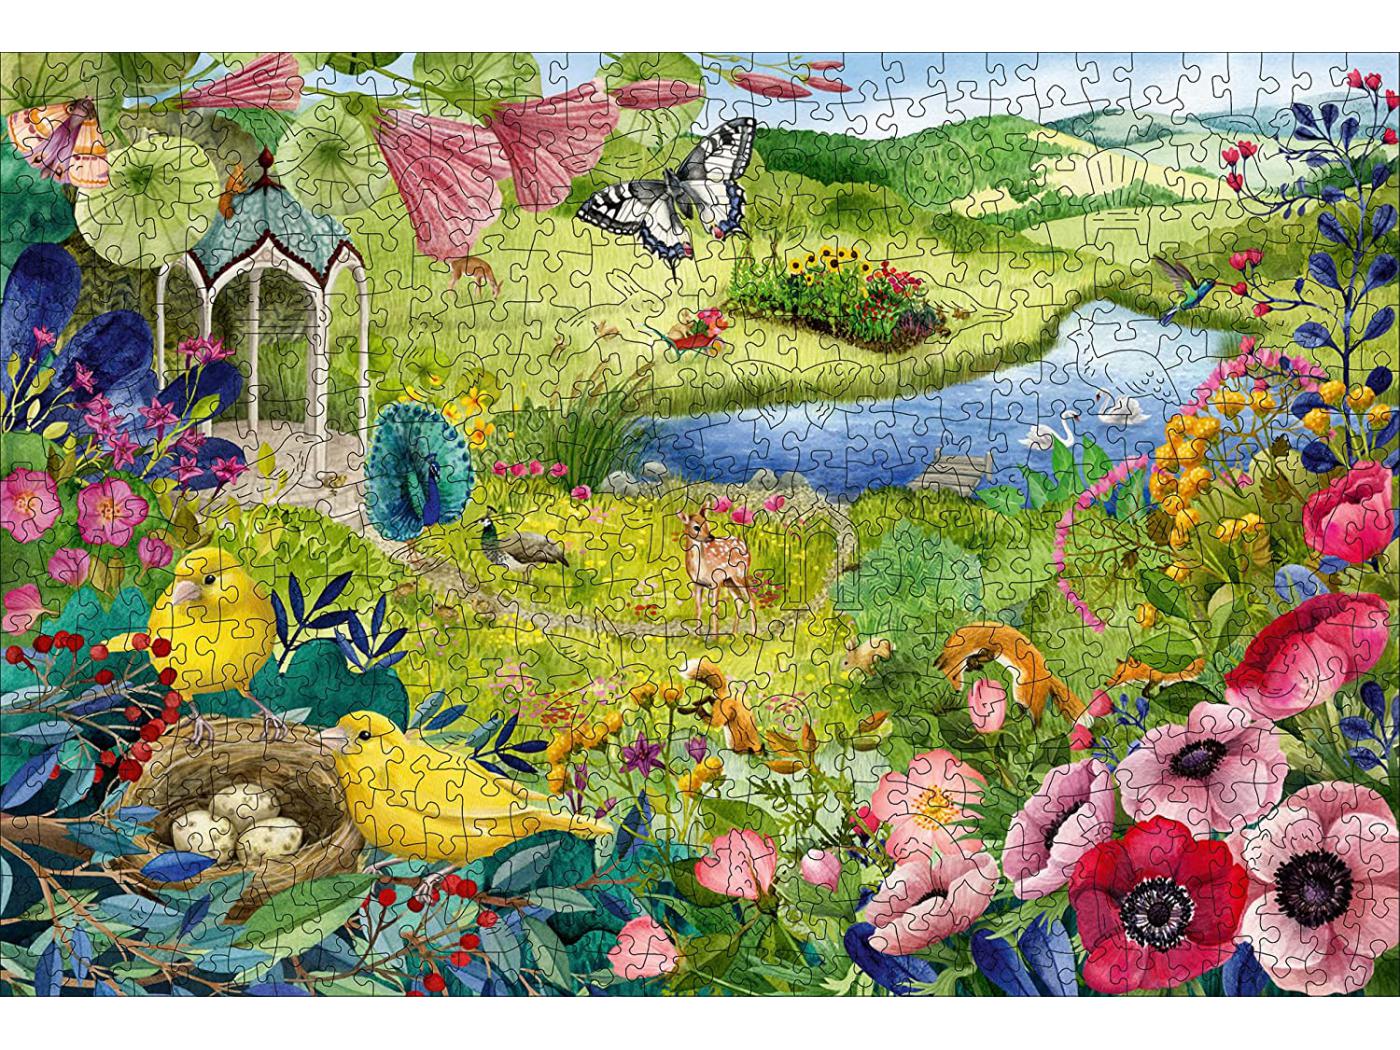 Ravensburger - Puzzles adultes - Puzzle en bois - Rectangulaire - 500 pcs -  Jardin de la nature